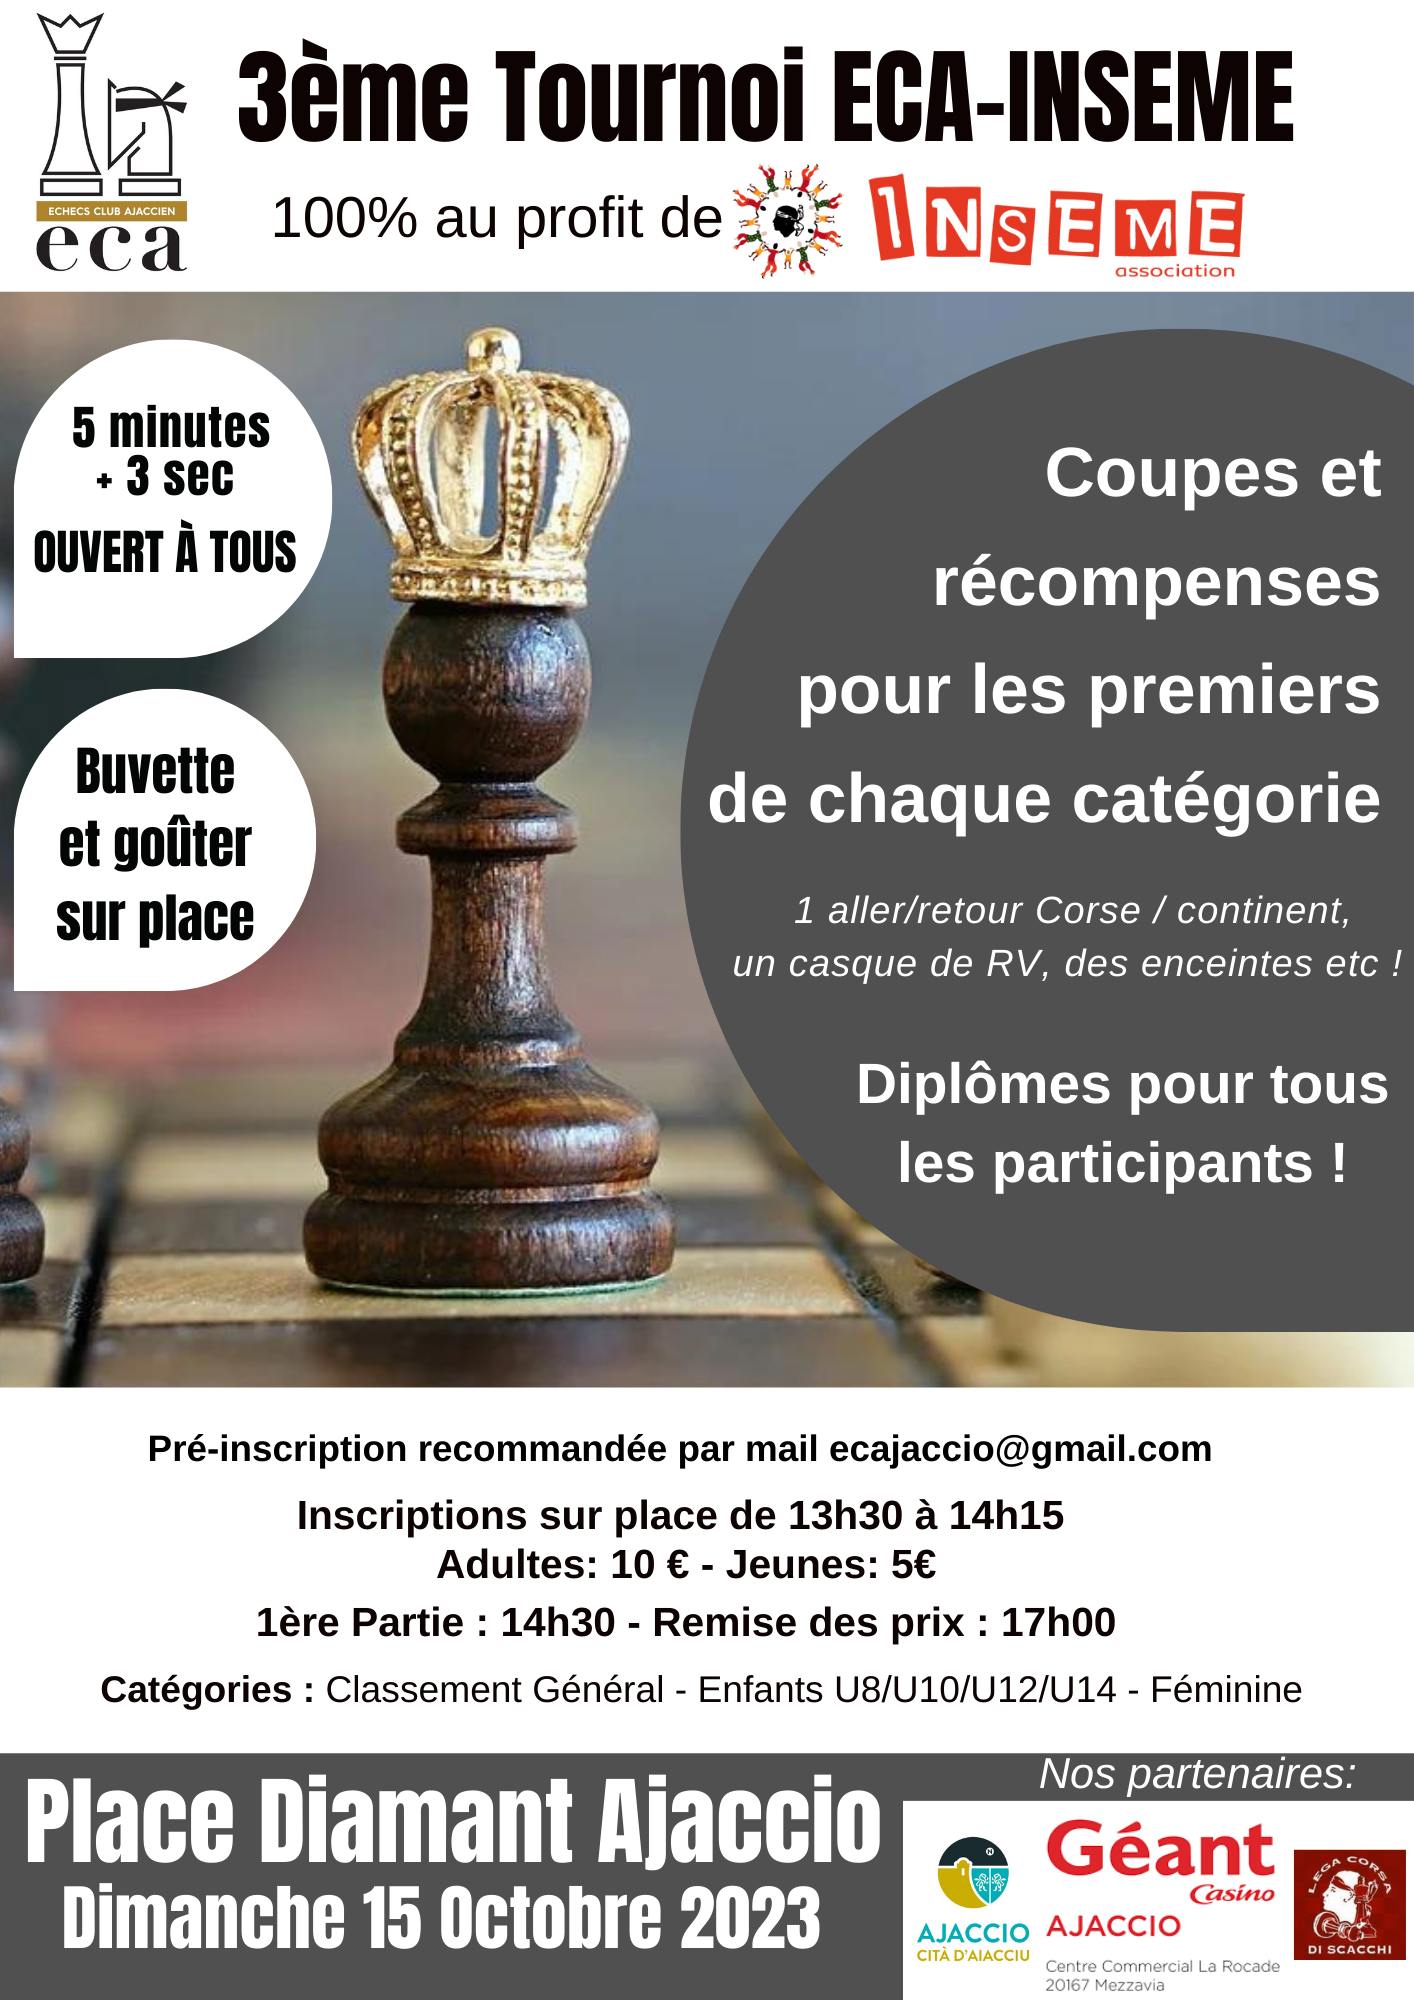 3e Tournoi d’échecs ECA-INSEME : une victoire pour la solidarité